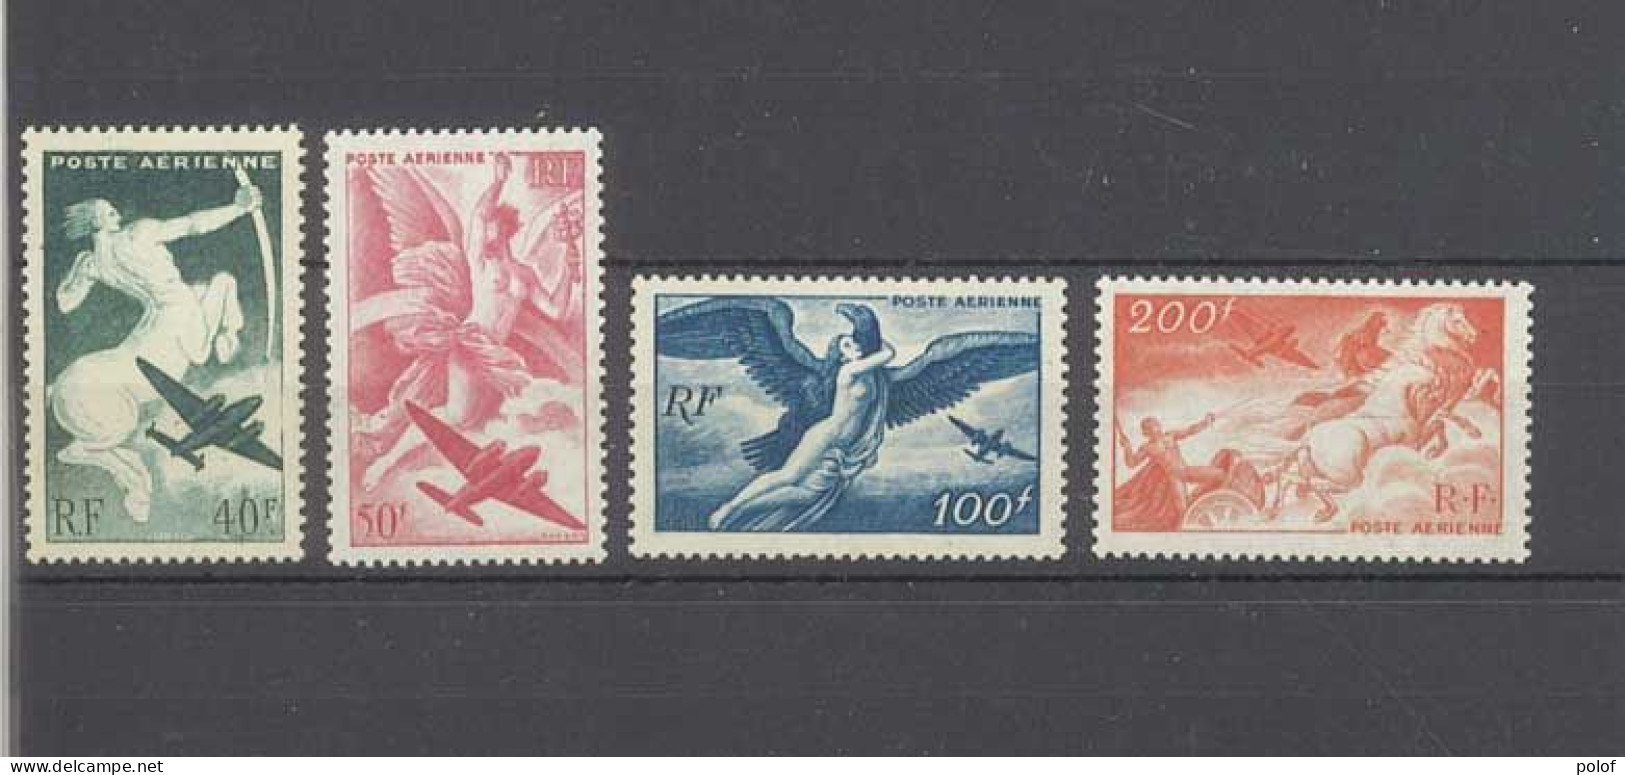 POSTE AERIENNE - Lot De 4 Timbres Neufs Avec Gomme Et Sans Trace De Charnière - Yvert N°16 à 19 - 1927-1959 Mint/hinged